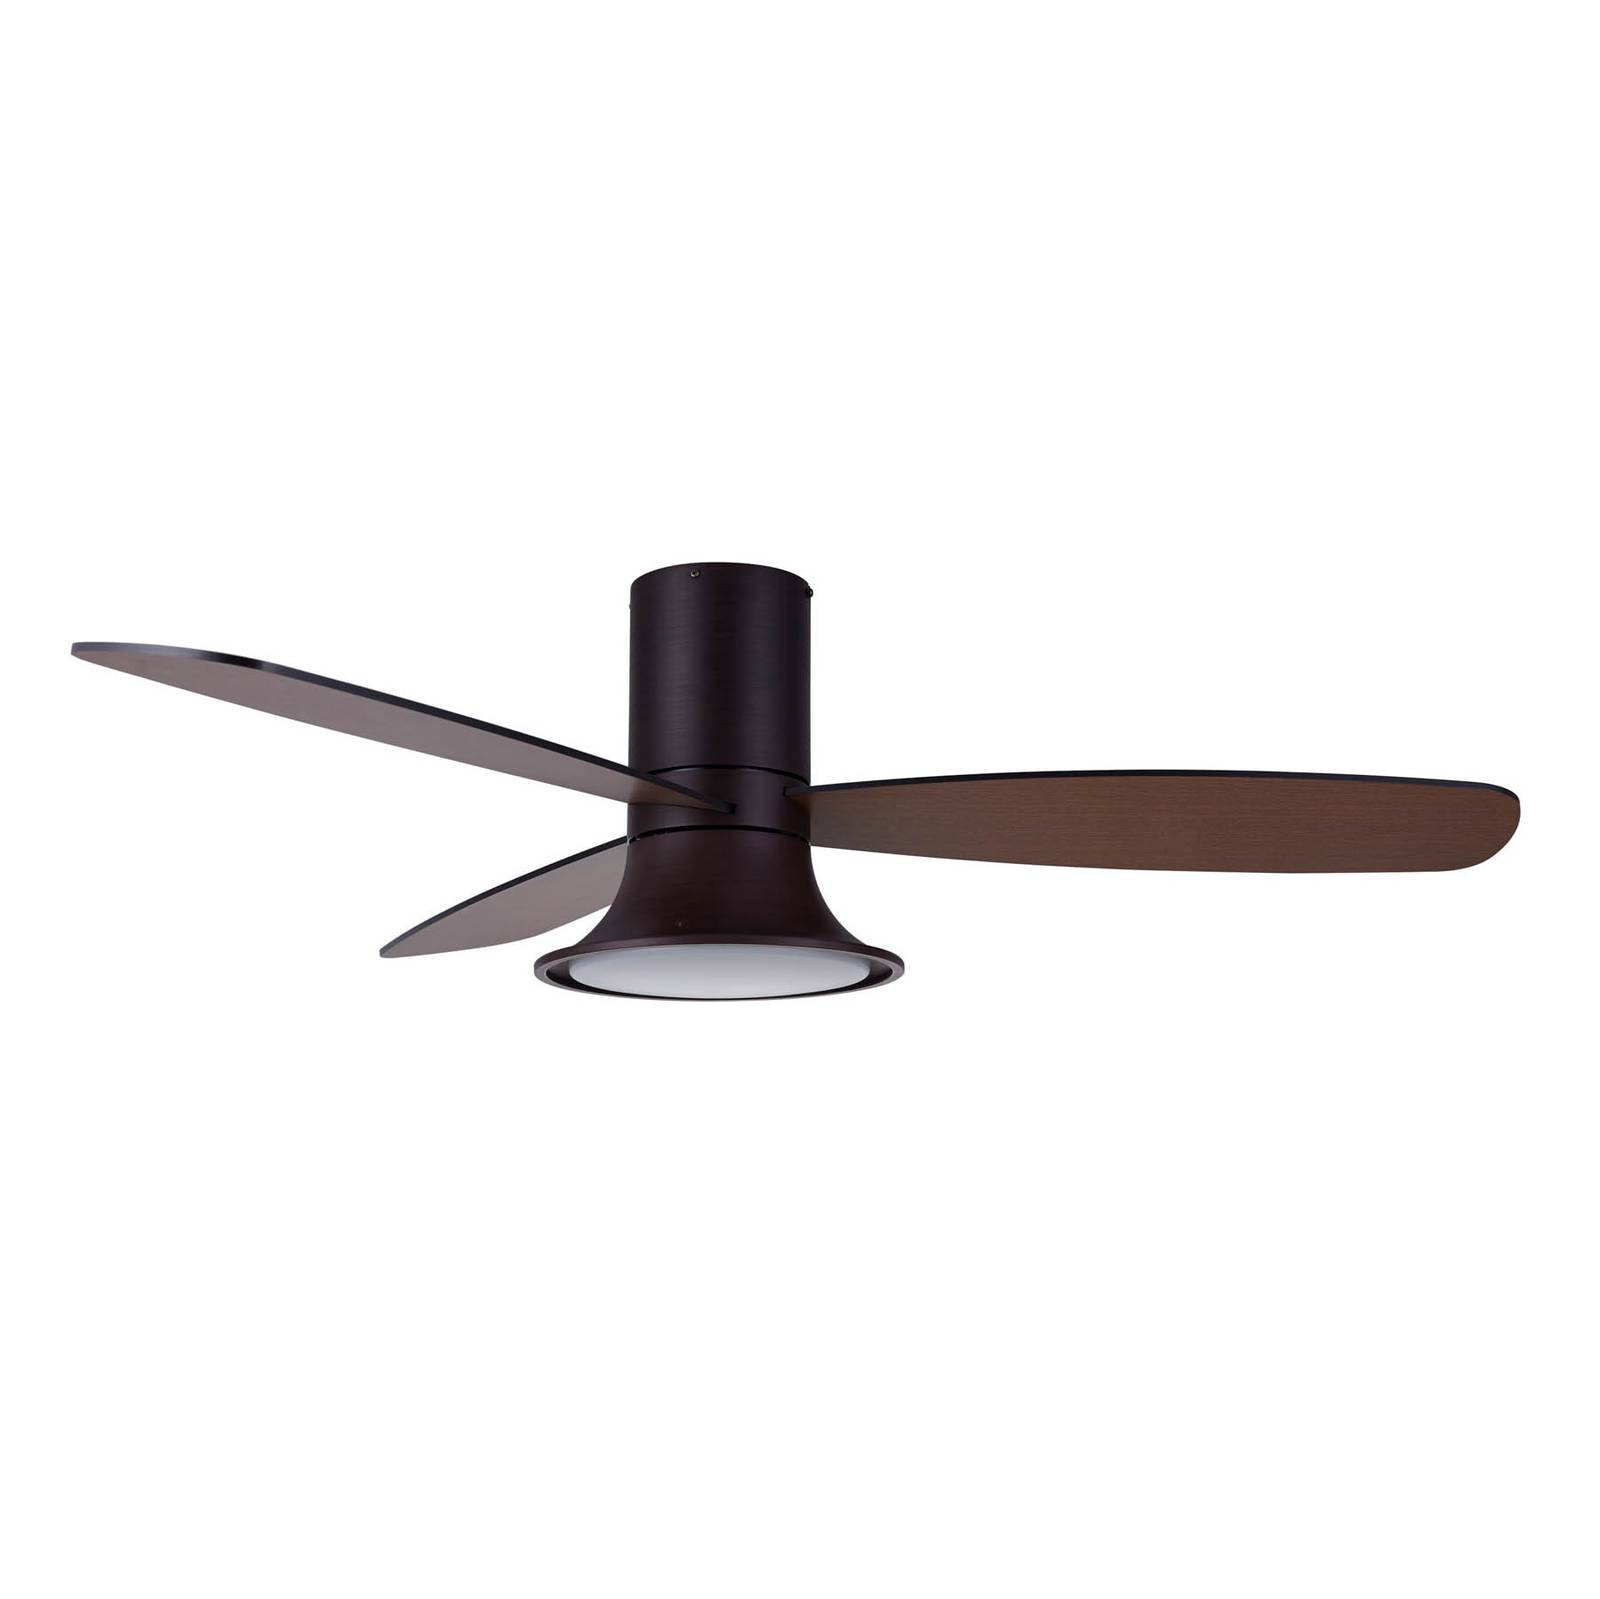 Image of Ventilateur de plafond Flusso à lampe LED, bronze 9333509151791